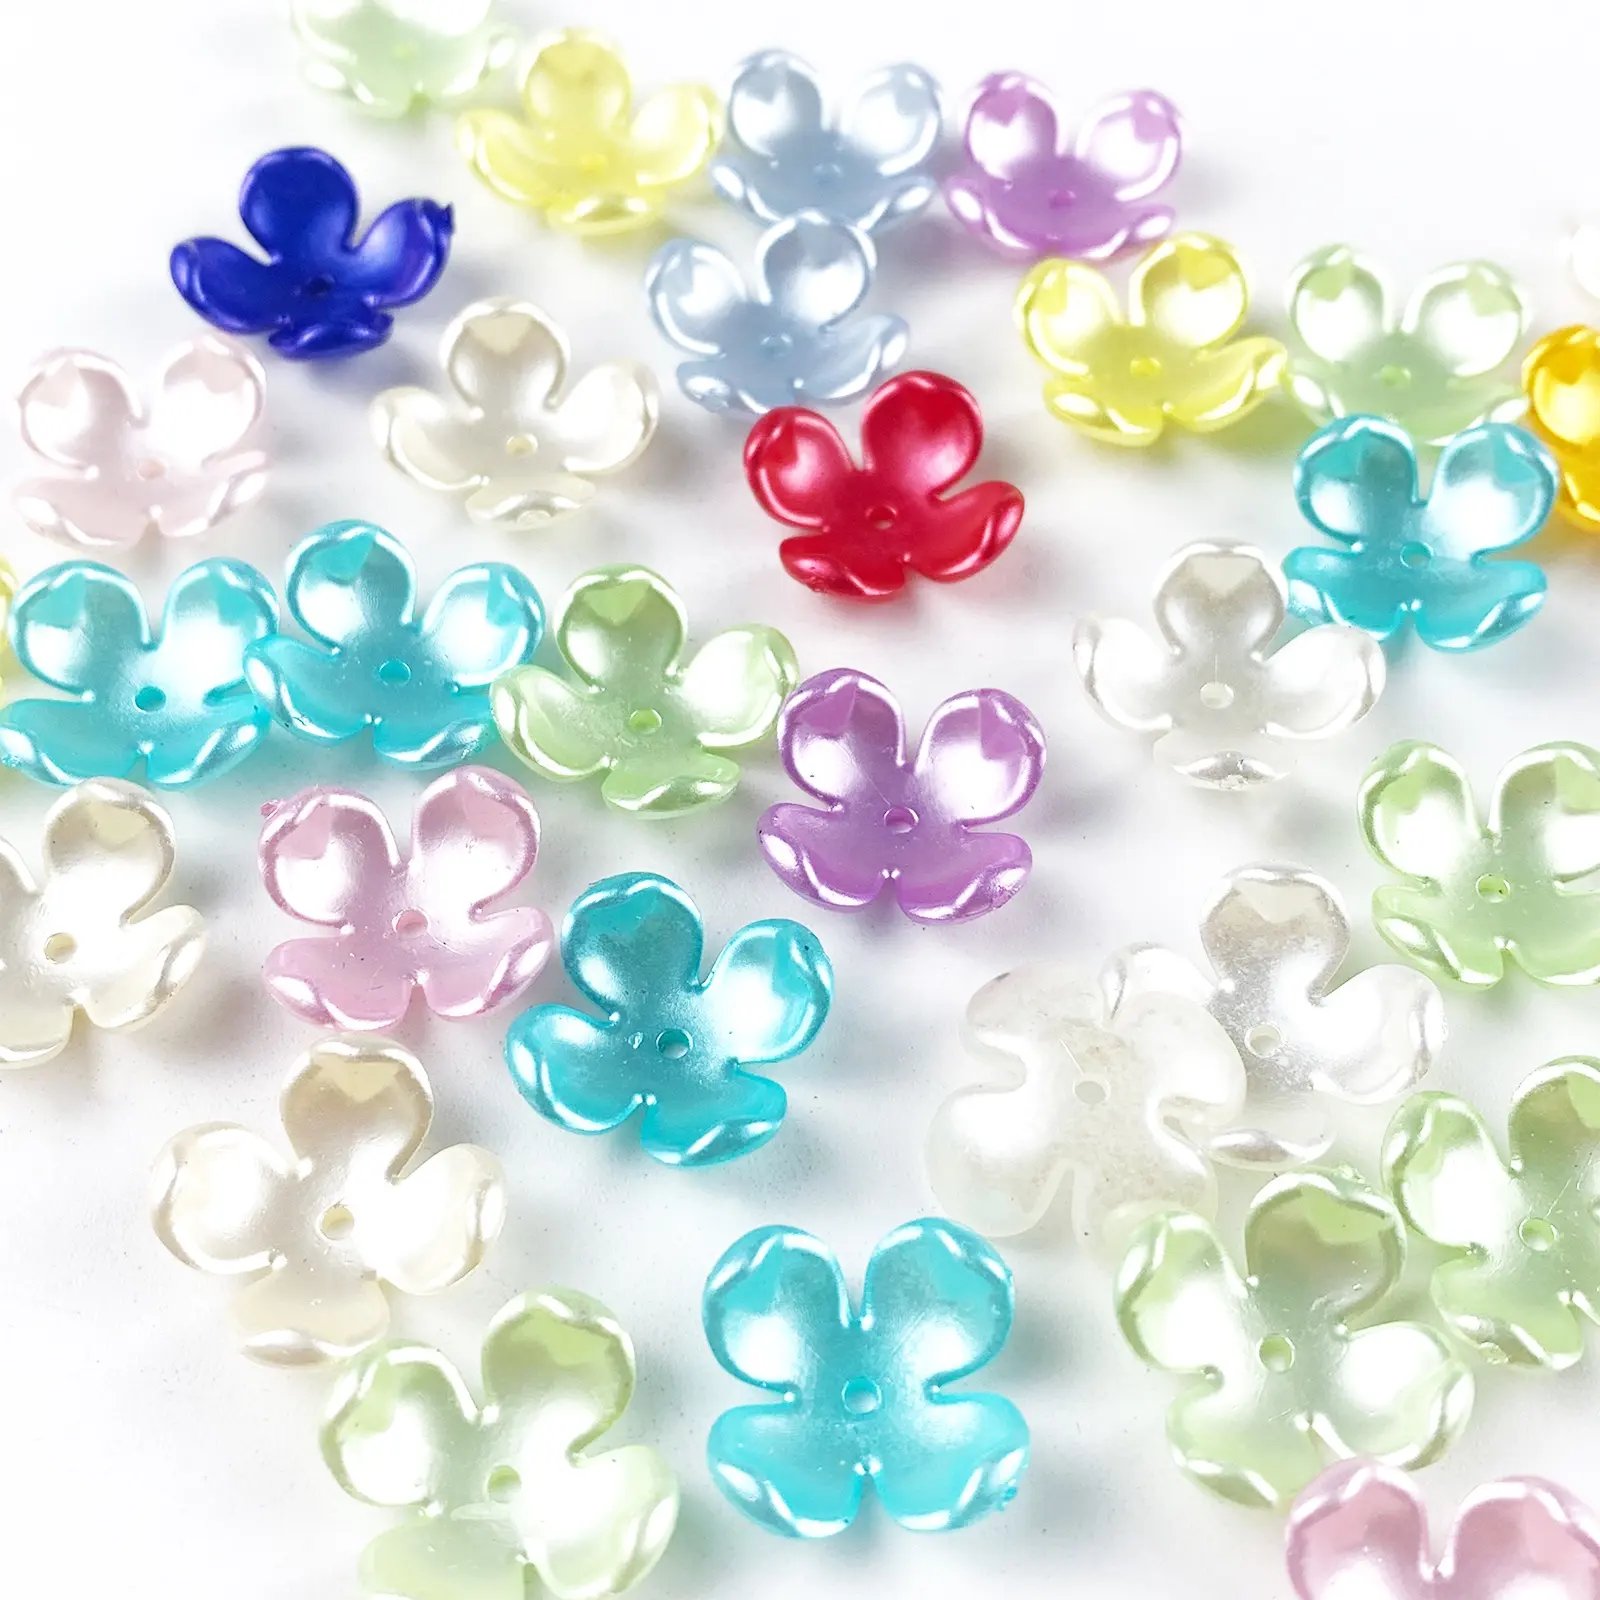 Großhandel Blumen form Imitation ABS Perlen Lose Perlen Künstliche Perlen ABS Perlen Für DIY Schmuck Funds tücke Herstellung